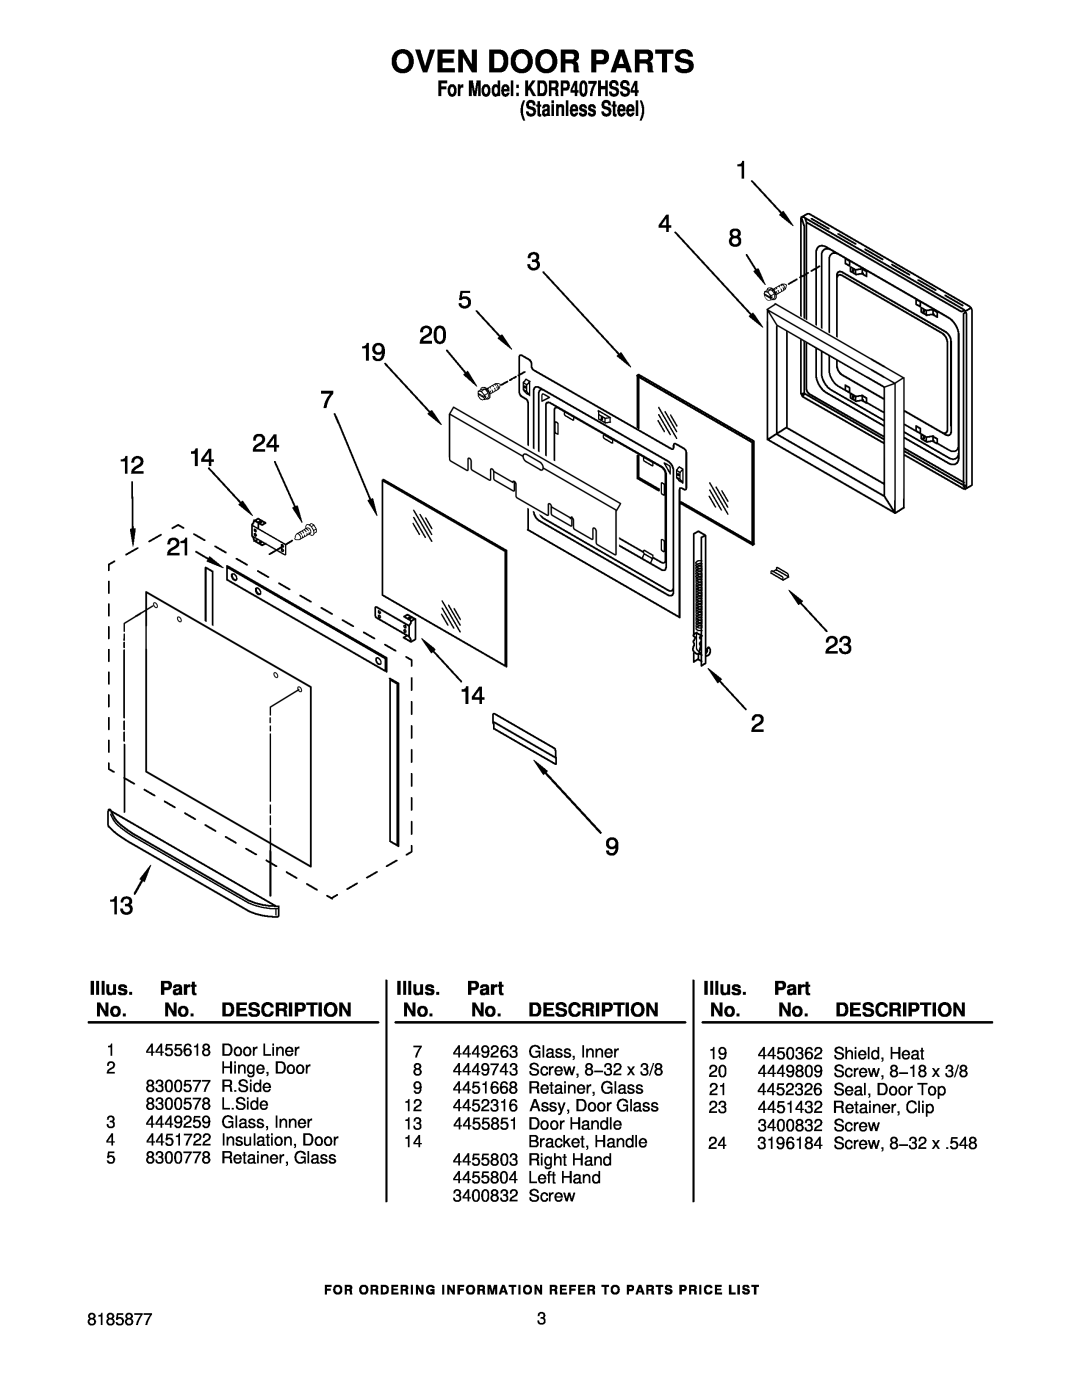 KitchenAid KDRP407HSS manual Oven Door Parts, Illus. Part No. No. DESCRIPTION 